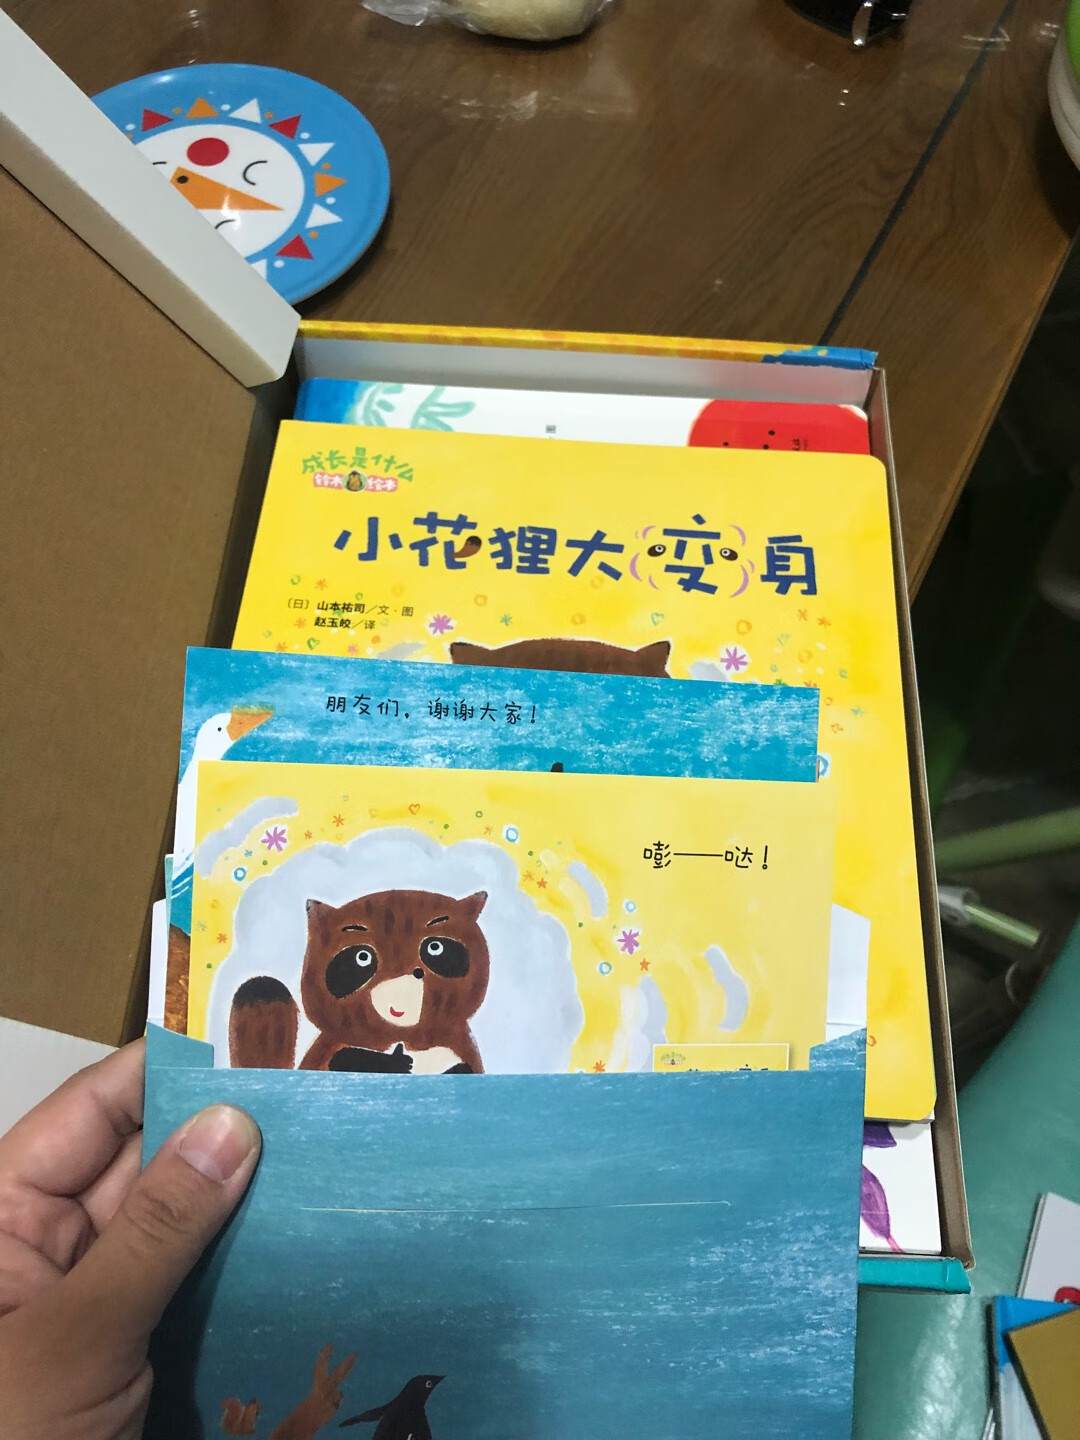 铃木绘本买过好几次了，都很有趣，内容孩子也容易理解